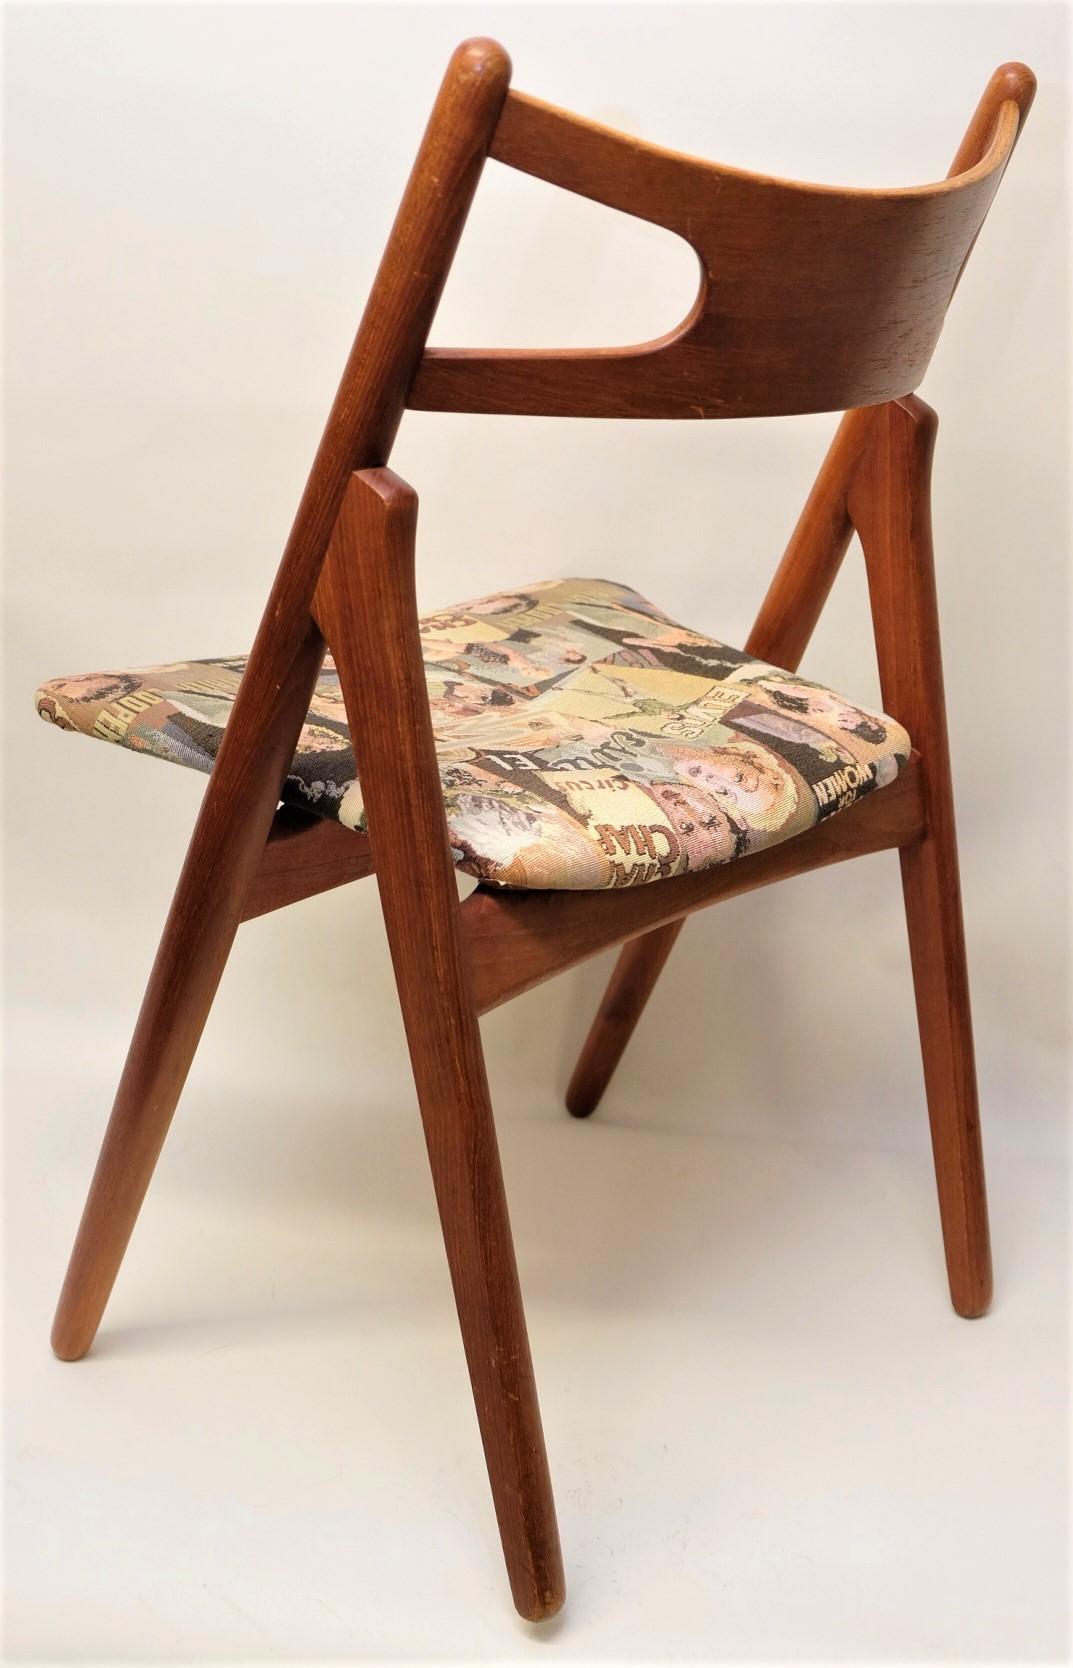 Hans J. Wegner Mid-Century Sawbuck Dining Chair CH29 Teak for Carl Hansen & Son For Sale 2